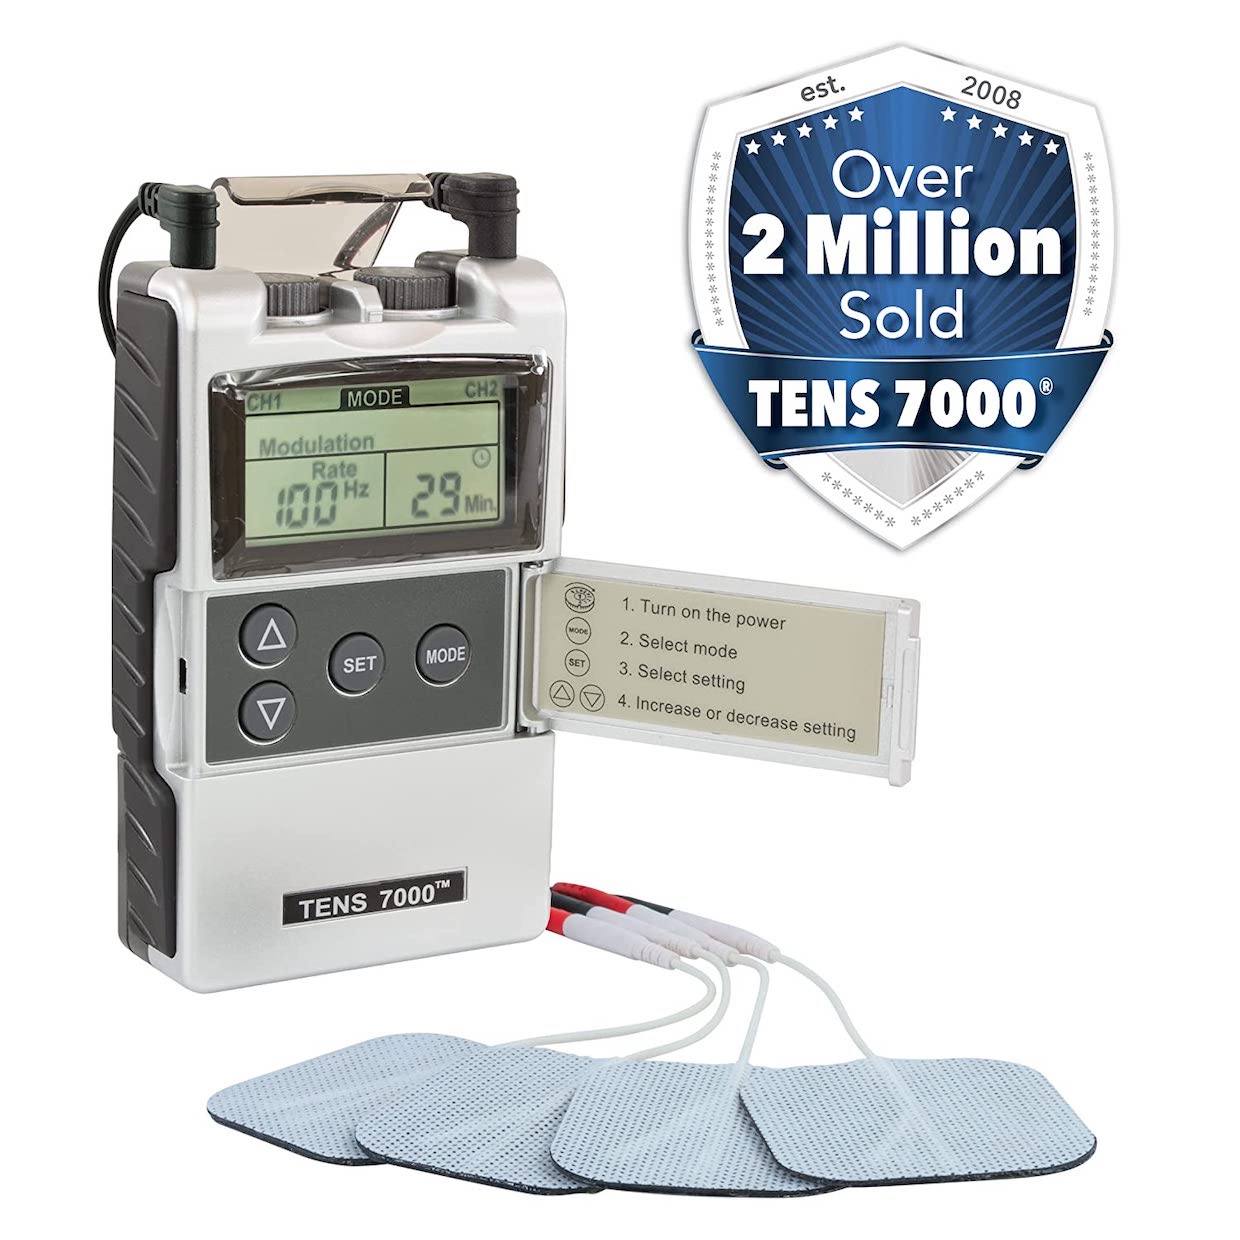 TENS 7000 Digital Pain Management Unit for sale online